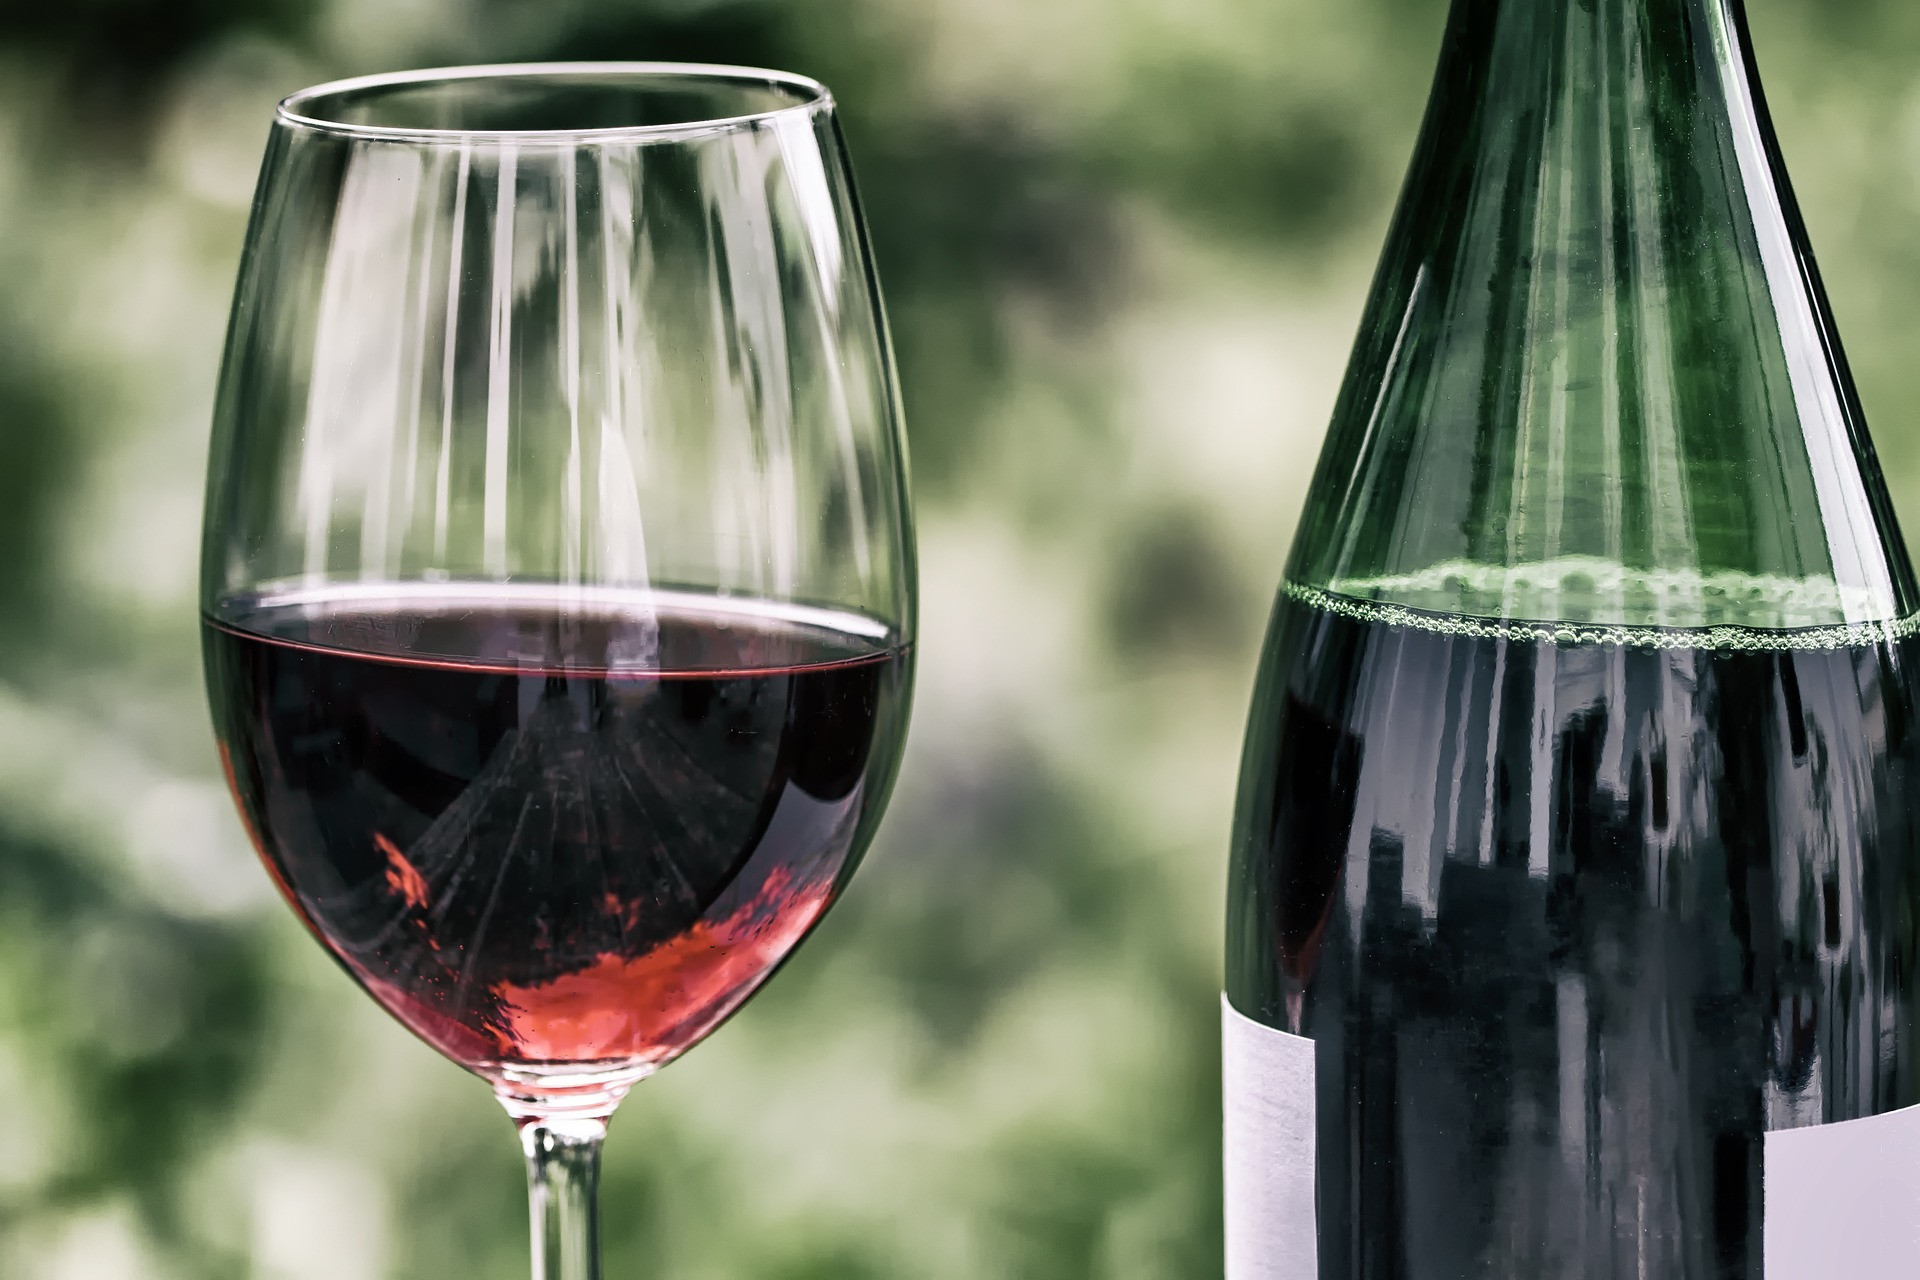 V pomyselnej súťaži o najzdravší alkoholický nápoj je jasným víťazom červené víno. Má slušný obsah minerálov (železa, draslíka, horčíka) a antioxidantov, ako sú flavonoidy alebo resveratrol. Posledná menovaná látka je napríklad aj v čučoriedkach, ríbezliach, arašídoch alebo kakau a podľa výskumníkov z Harvard Medical School môže predlžovať životaschopnosť a obranyschopnosť buniek, a tak aj náš život.
S červeným vínom súvisia aj často proklamované benefity stredomorského jedálnička, vedci už preukázali jeho vplyv na vyvažovanie hladiny cholesterolu v krvi alebo na prevenciu srdcových ochorení.
Zle na tom nie je ani víno biele alebo ružové, sú však všeobecne sladšie a viac kalorické. Záleží ale vždy na konkrétnej odrode a na podielu alkoholu. Napríklad ťažšie chardonnay alebo sauvignon blanc majú viac kalórií než ľahšie pinot alebo rizling. Ak chcete držať váhu dole, odporúča Kristína Bačová vyberať zo suchých bielych vín.
Vhodným spôsobom, ako v lete piť víno, je sangria s množstvom ovocia - aspoň do seba dostanete vitamíny. Len to chce nedoslaďovať. Prekvapivo nízku kalorickú hodnotu, ale zato veľa prirodzeného cukru majú vína šumivé, ako je šampanské alebo prosecco. Akokoľvek k tomu slnečné dni zvádzajú, vyhnite sa miešaniu prosecca s aperitívmi. Radšej ho pite samotné.
Šampanské alebo sekt môžete trochu vylepšiť rozmixovanými broskyňami, pomarančovou alebo grepovou šťavou - najlepšie takou, čo si sami doma vytlačítte. Rovnako ako u vína aj tu platí: hlavne s mierou. Dať si na záhradnej party štyri bellini alebo džbán sangrie rozhodne nie je to isté ako zjesť misku ovocného šalátu.